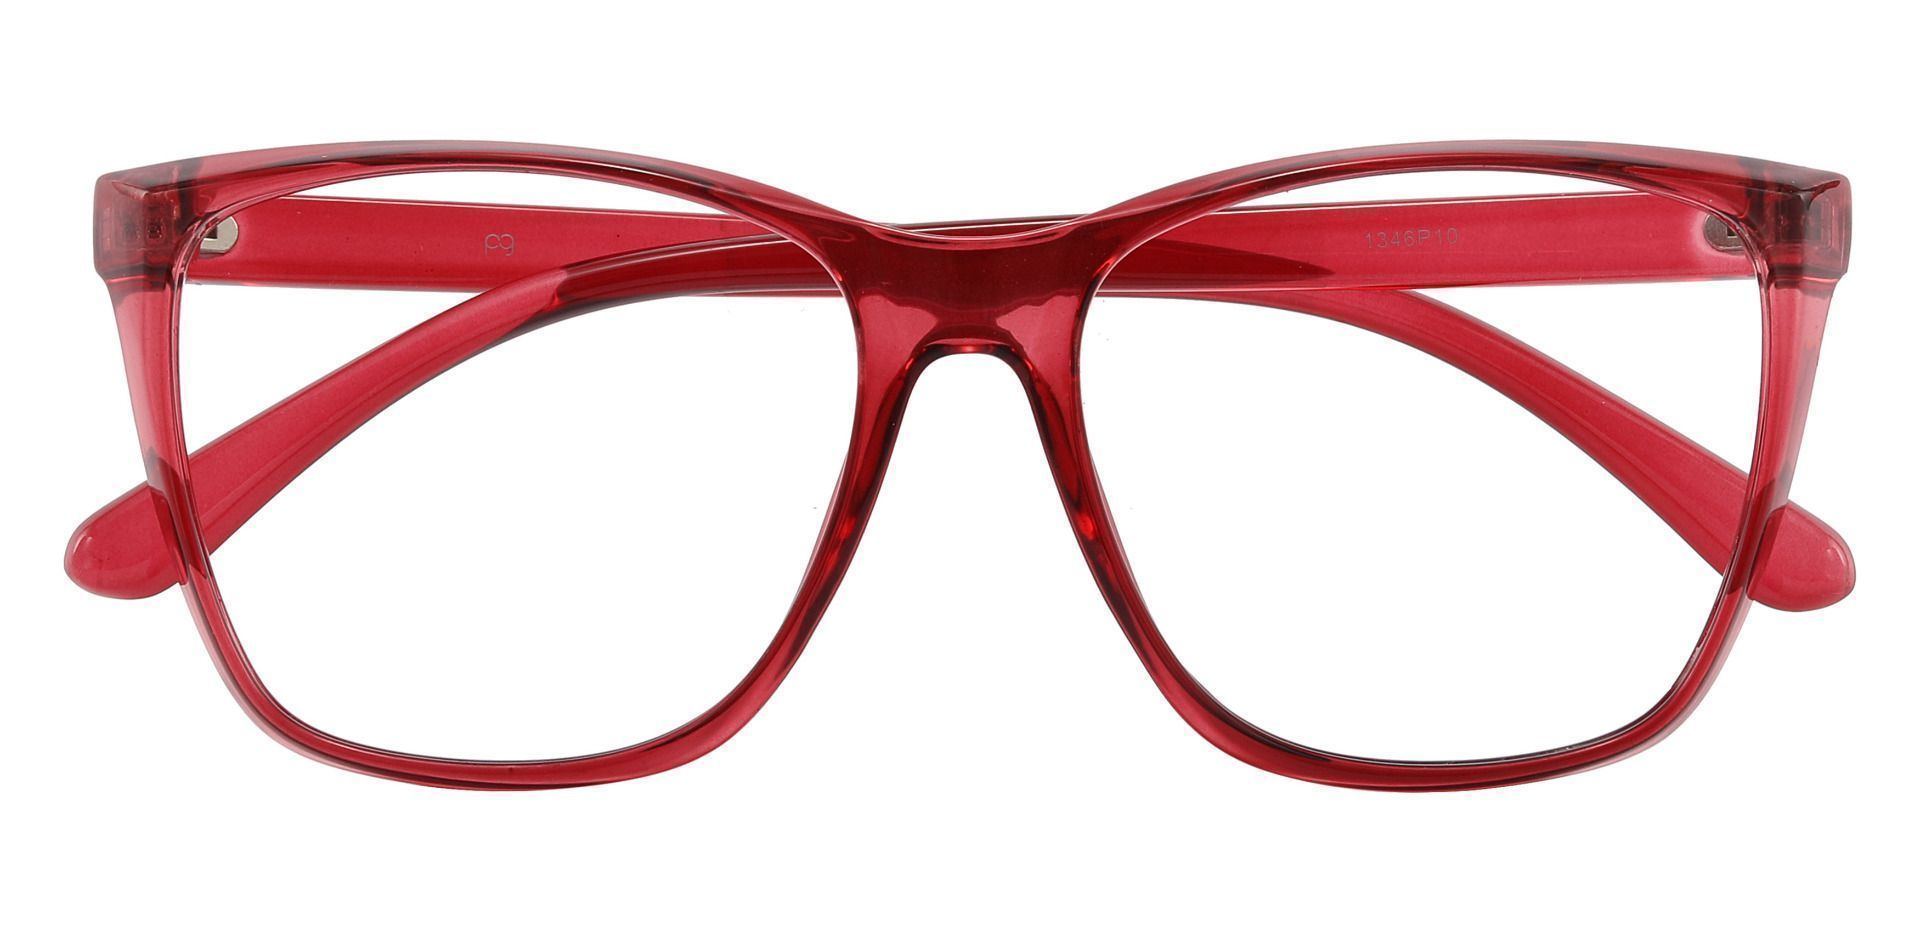 Taryn Square Prescription Glasses - Red